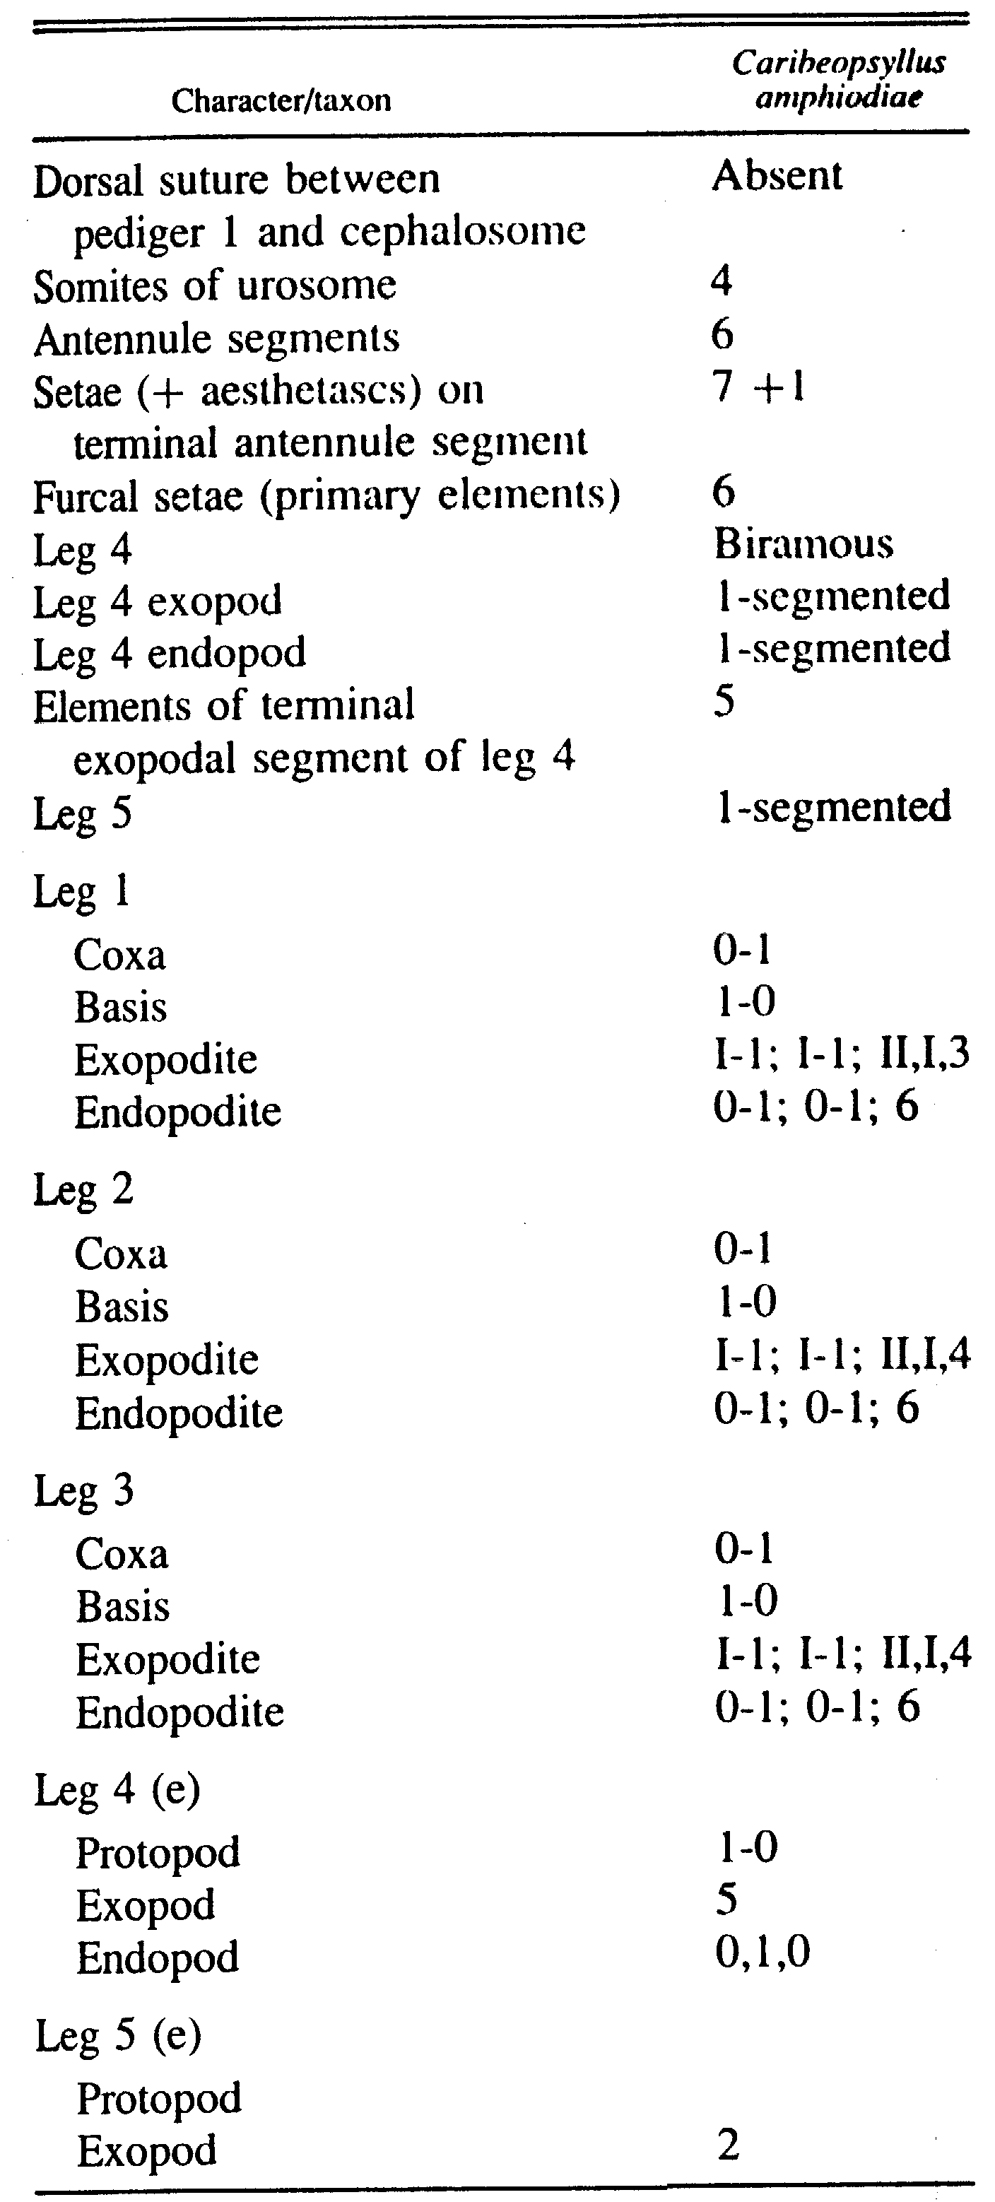 Espce Caribeopsyllus amphiodiae - Planche 5 de figures morphologiques